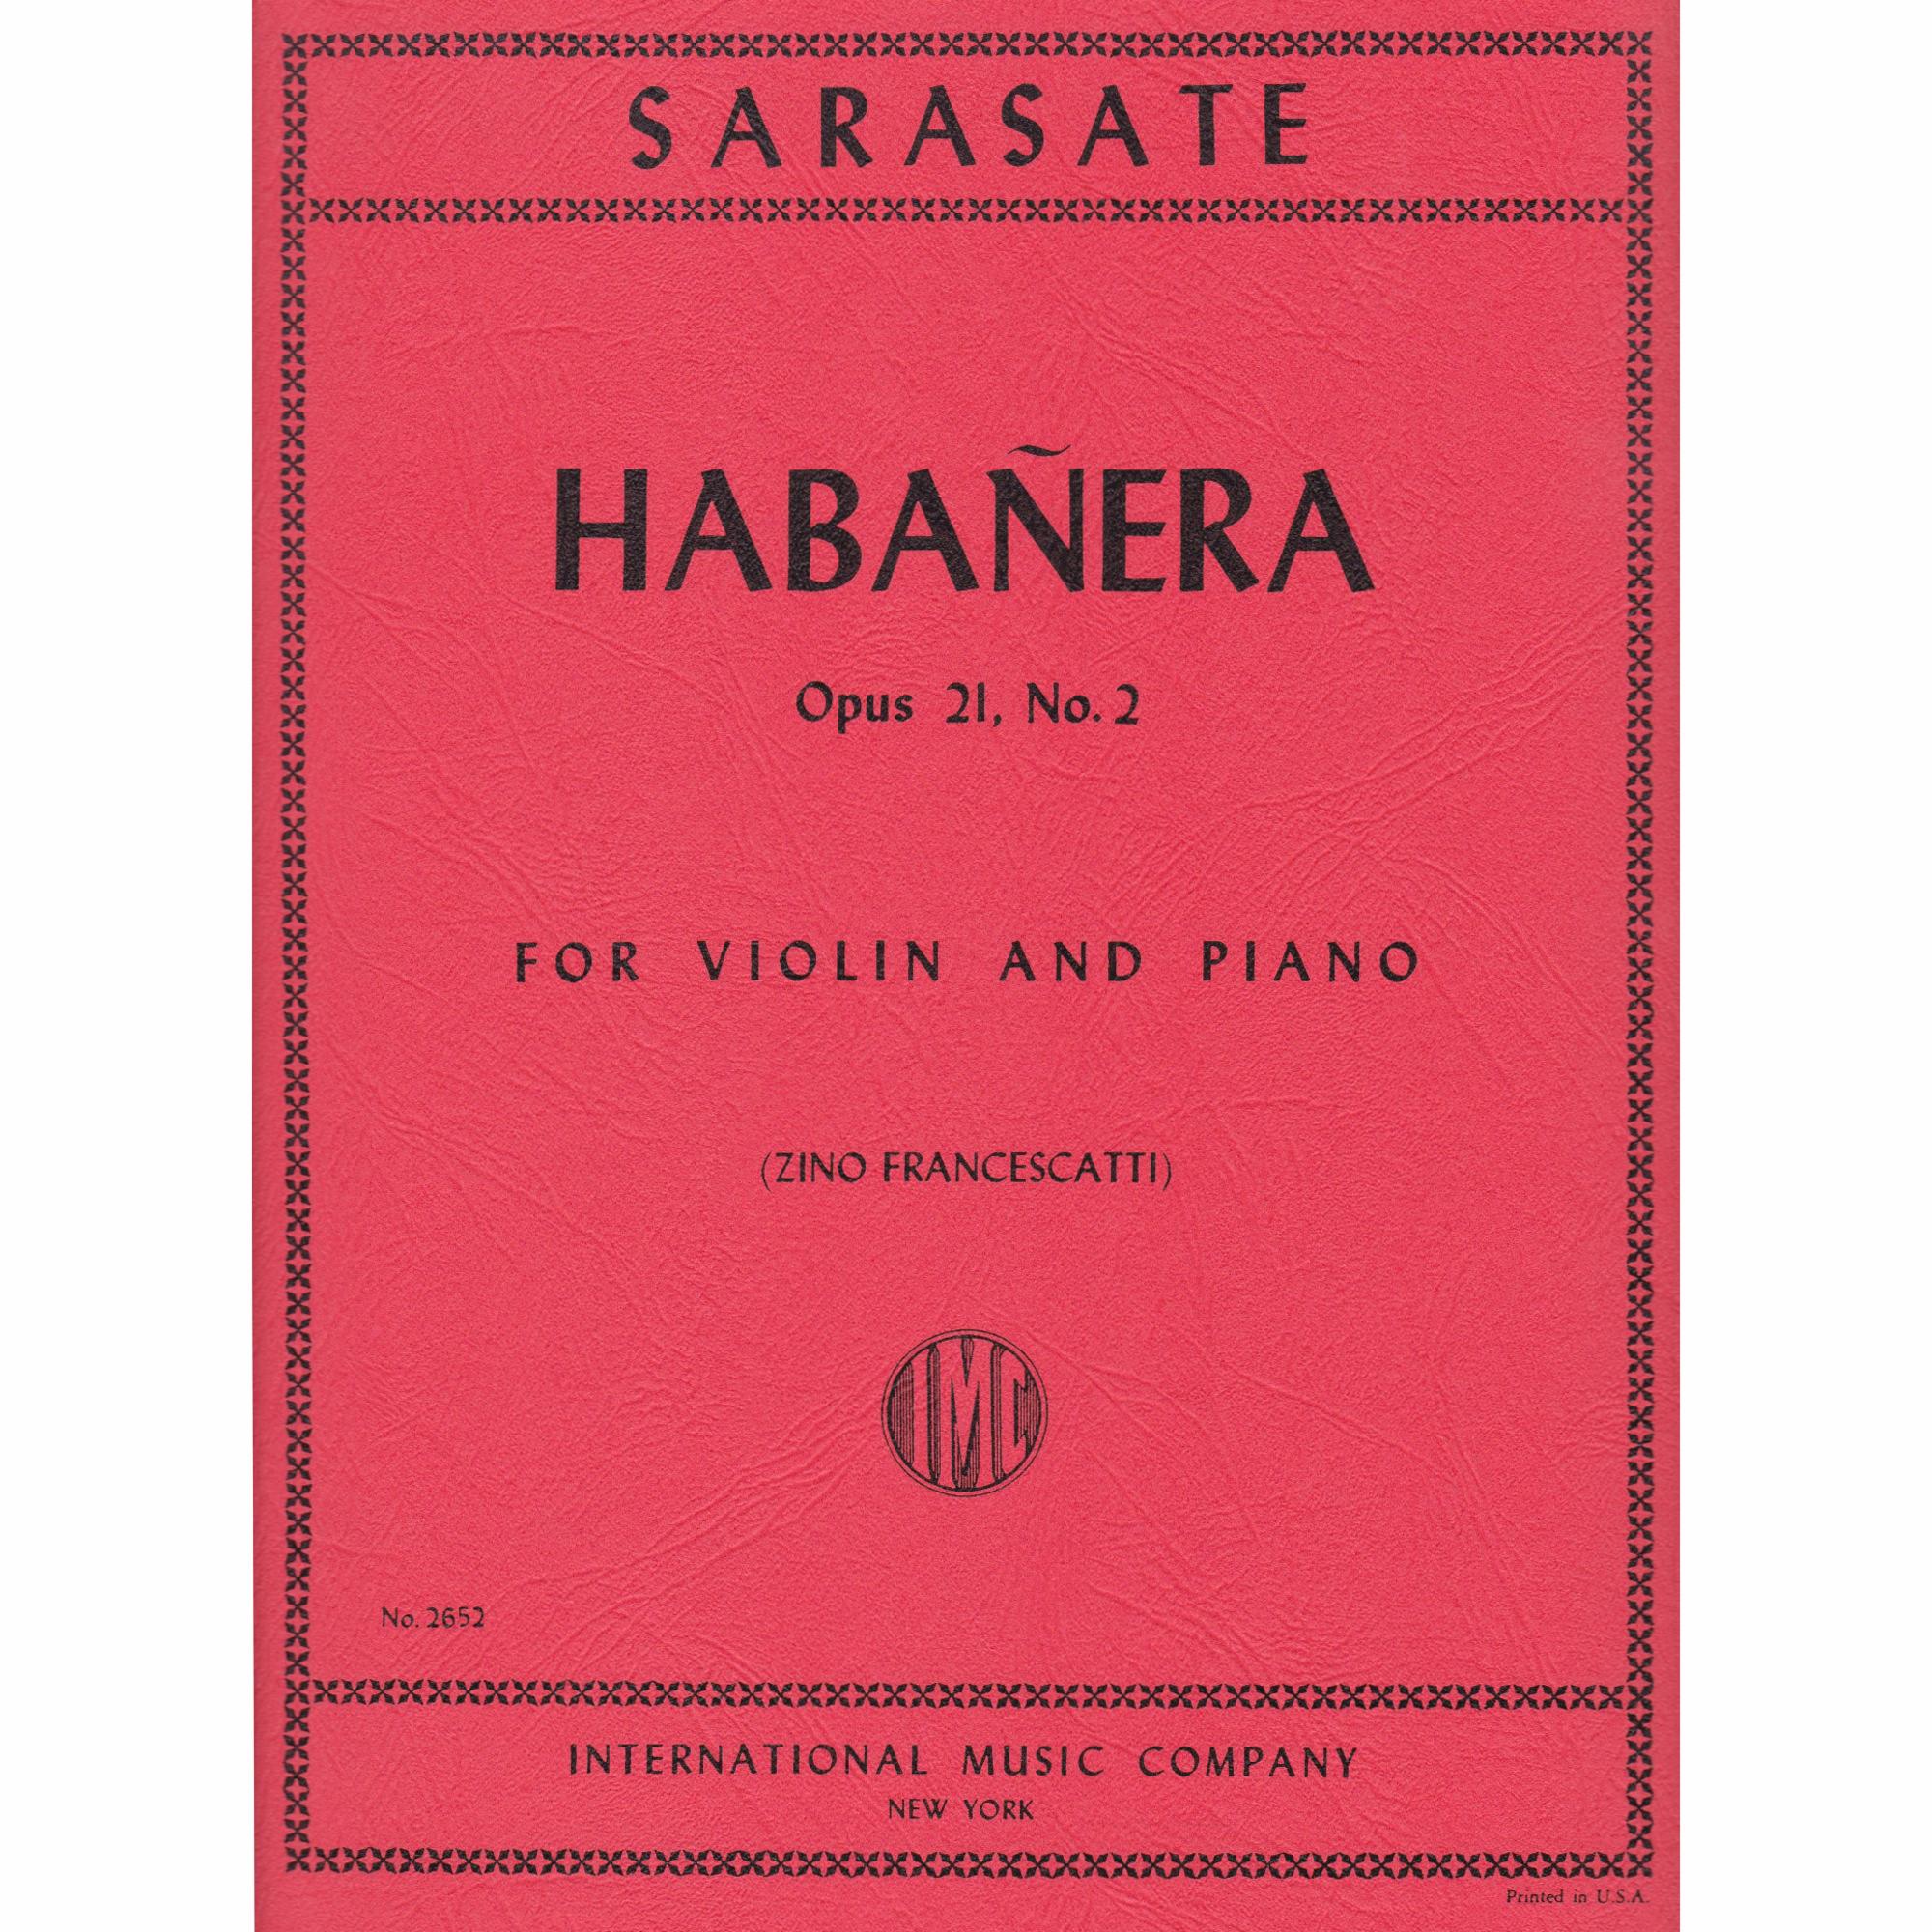 Habanera for Violin and Piano, Op. 21, No. 2